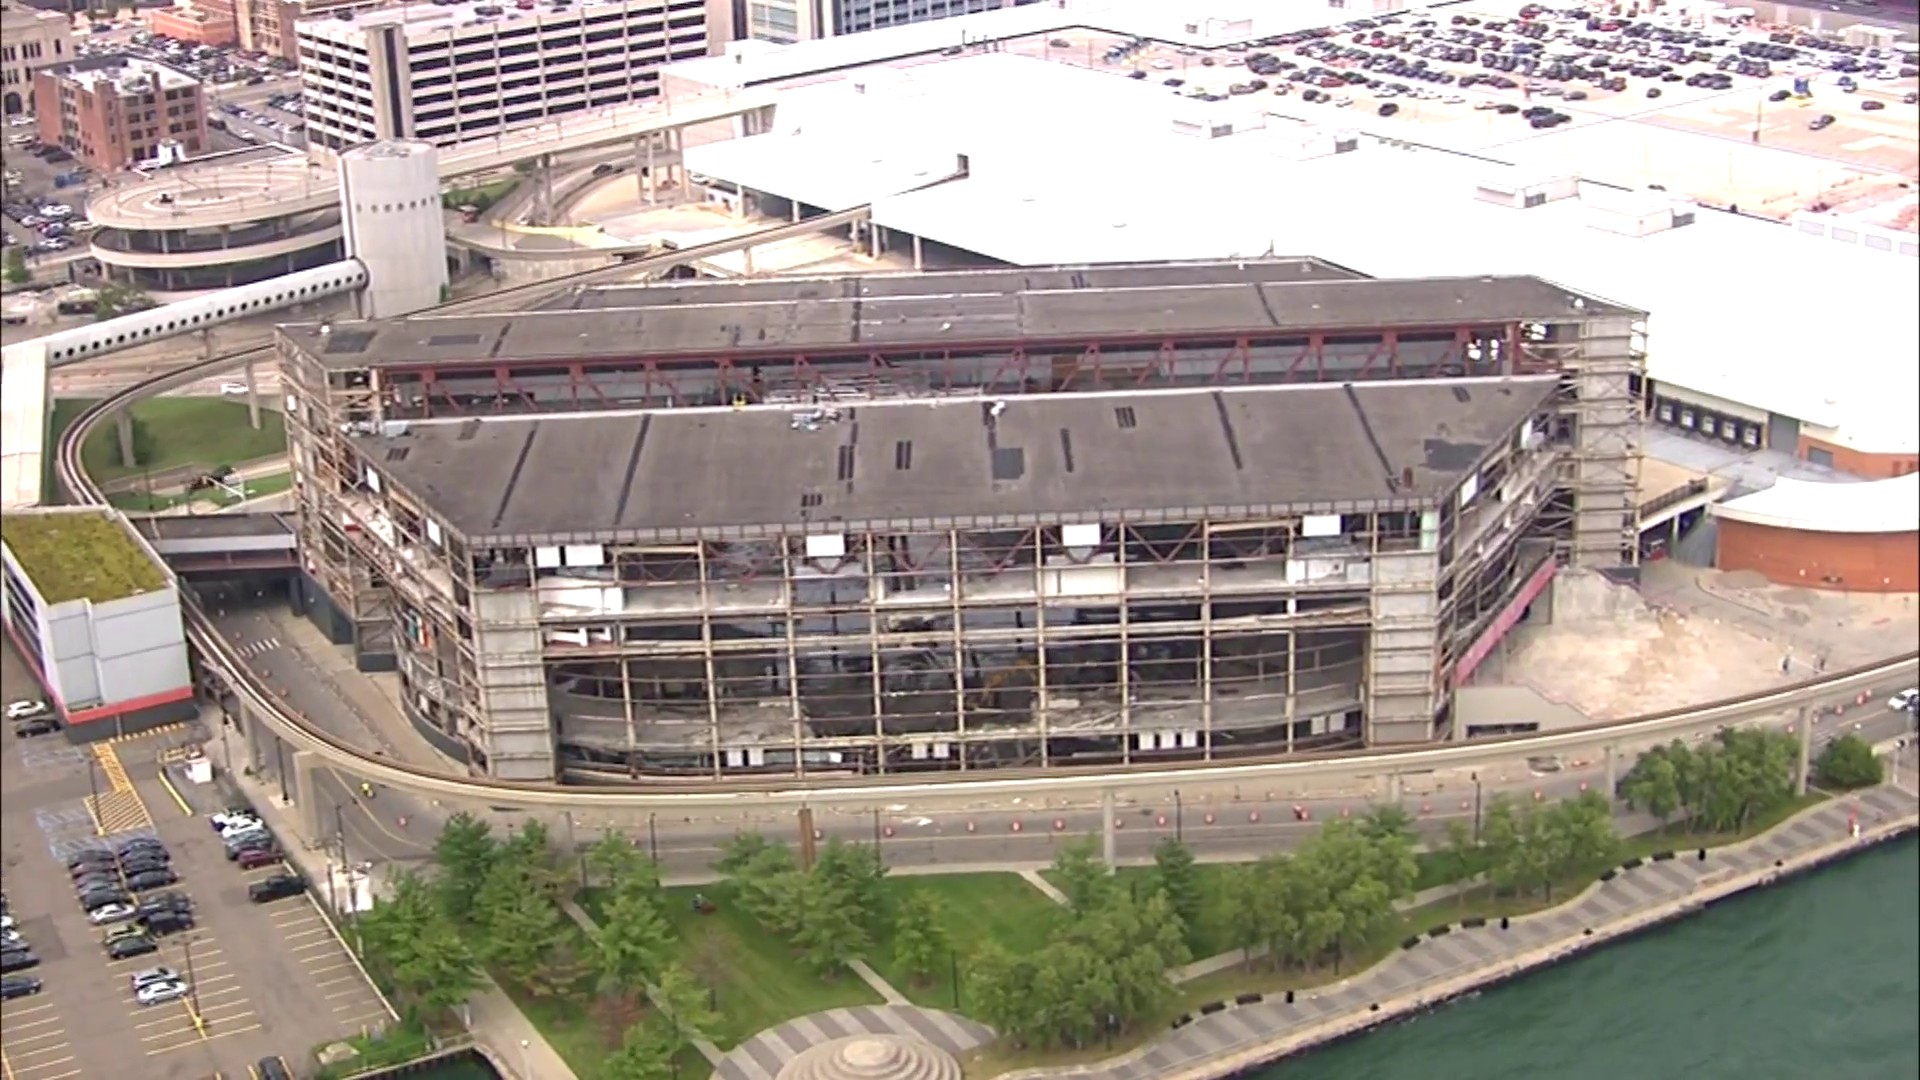 Plans move ahead for demolition of Detroit's Joe Louis Arena - NBC Sports